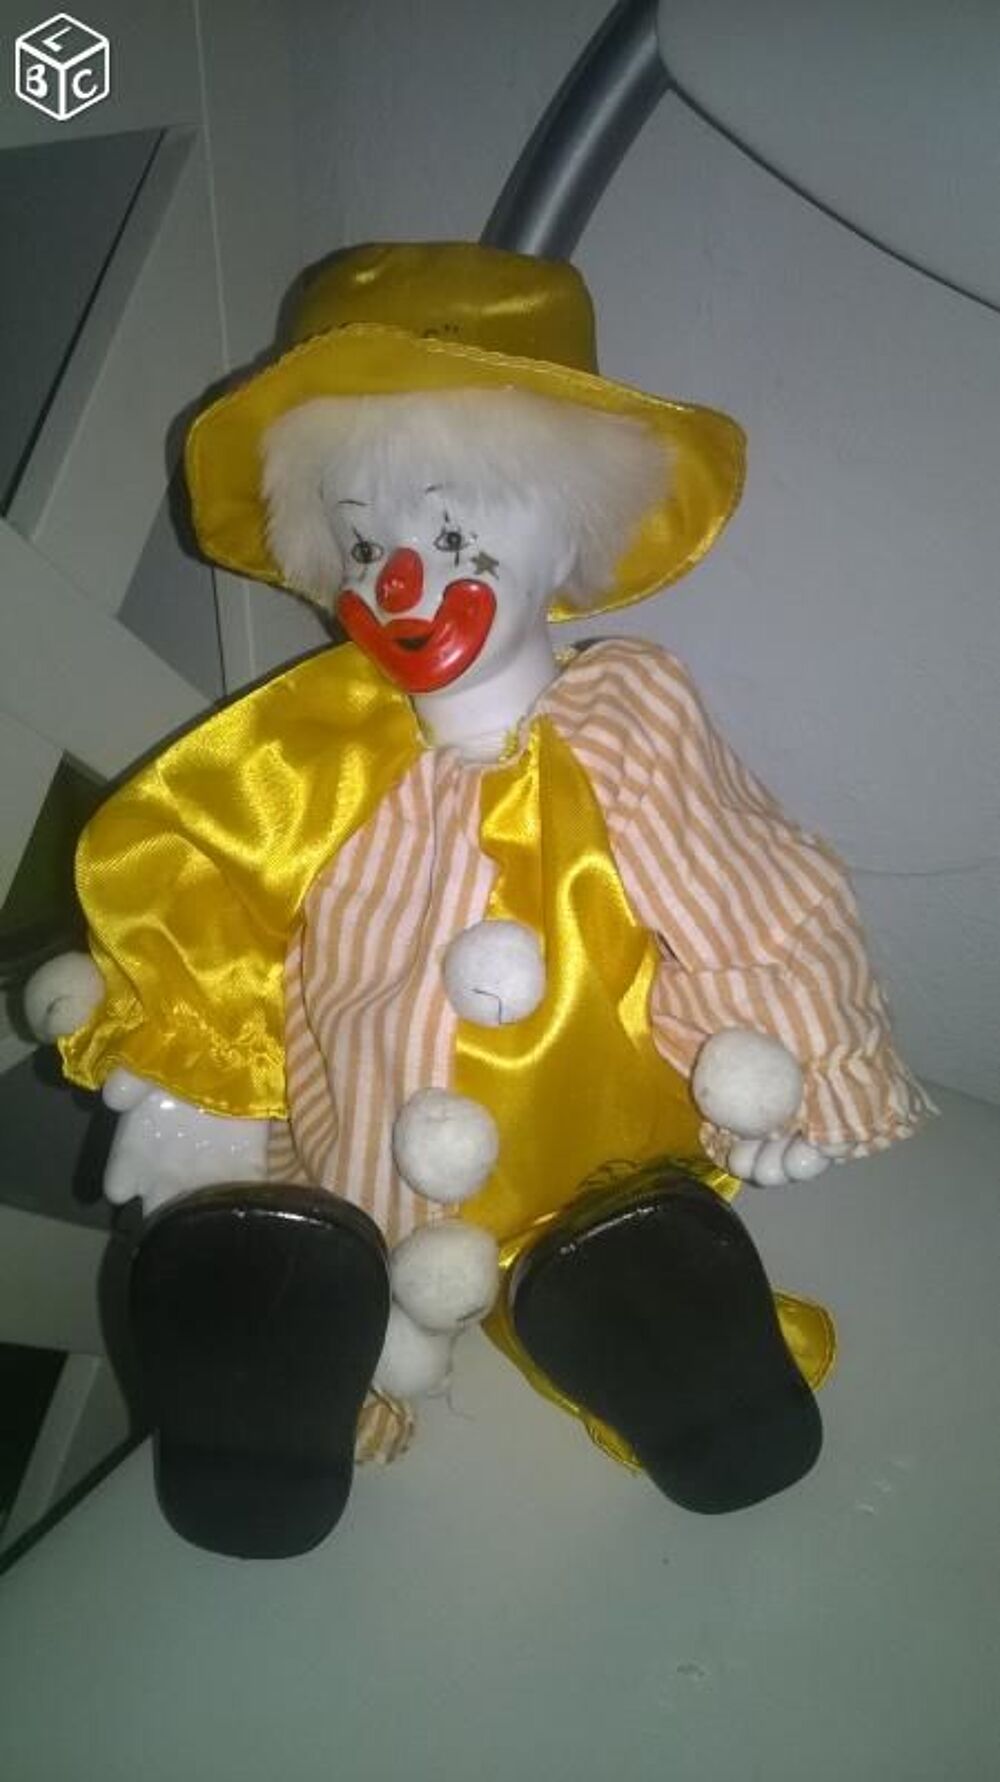 Clown jaune
Pieds et main en porcelaine articule
Tres bell 